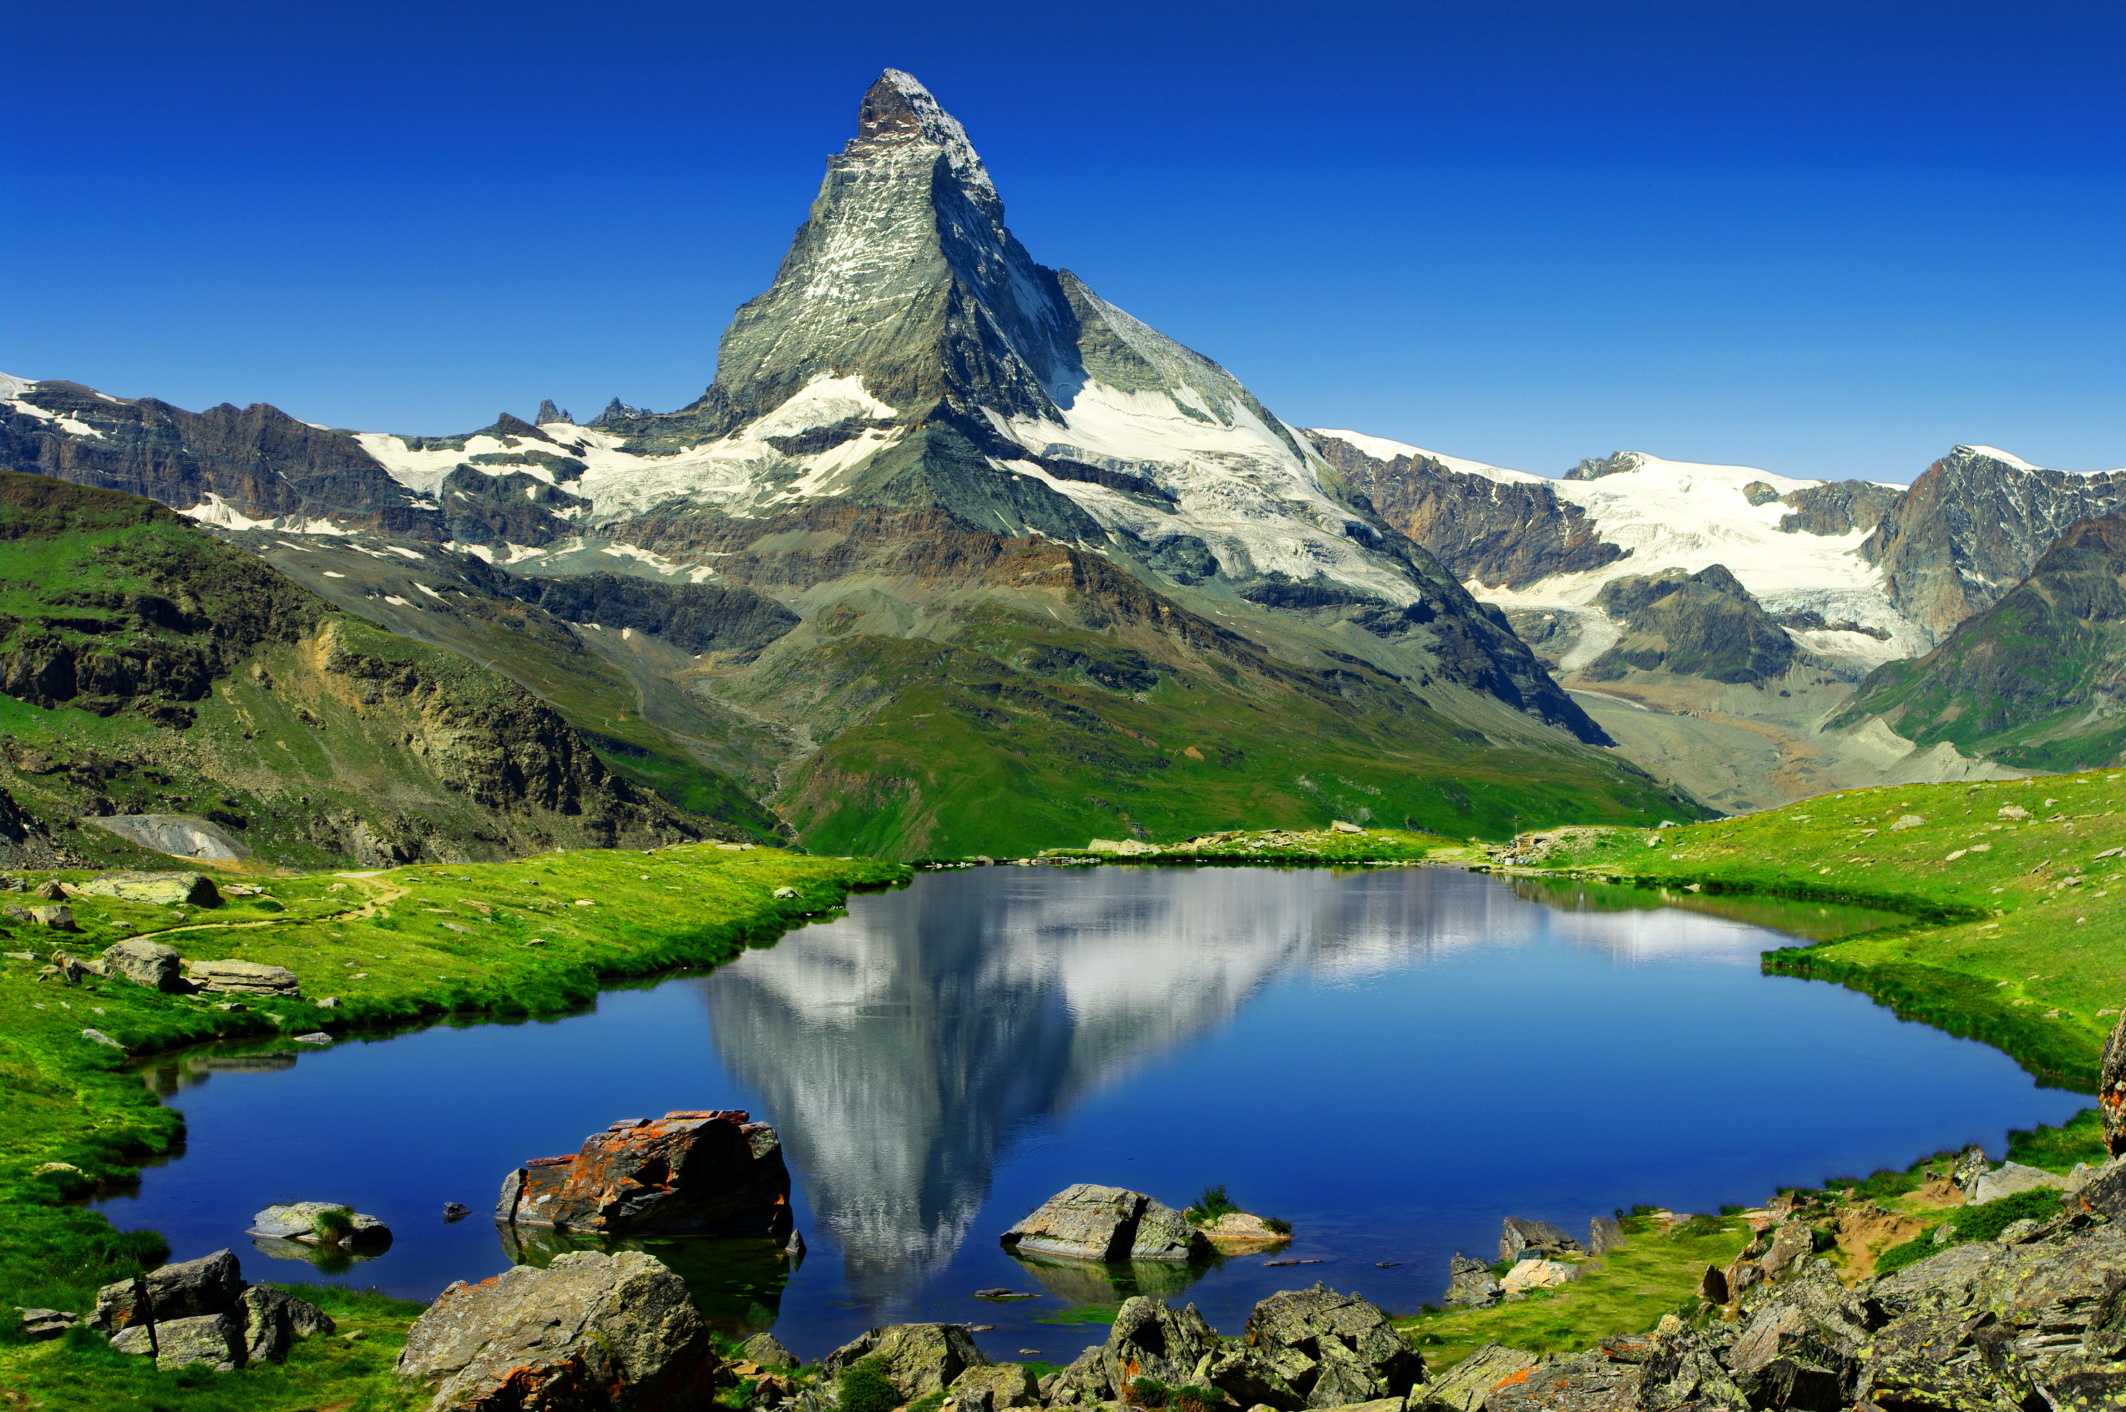 HD Matterhorn wallpaper, Travel enthusiast's choice, Nature's masterpiece, Stunning view, 2130x1420 HD Desktop